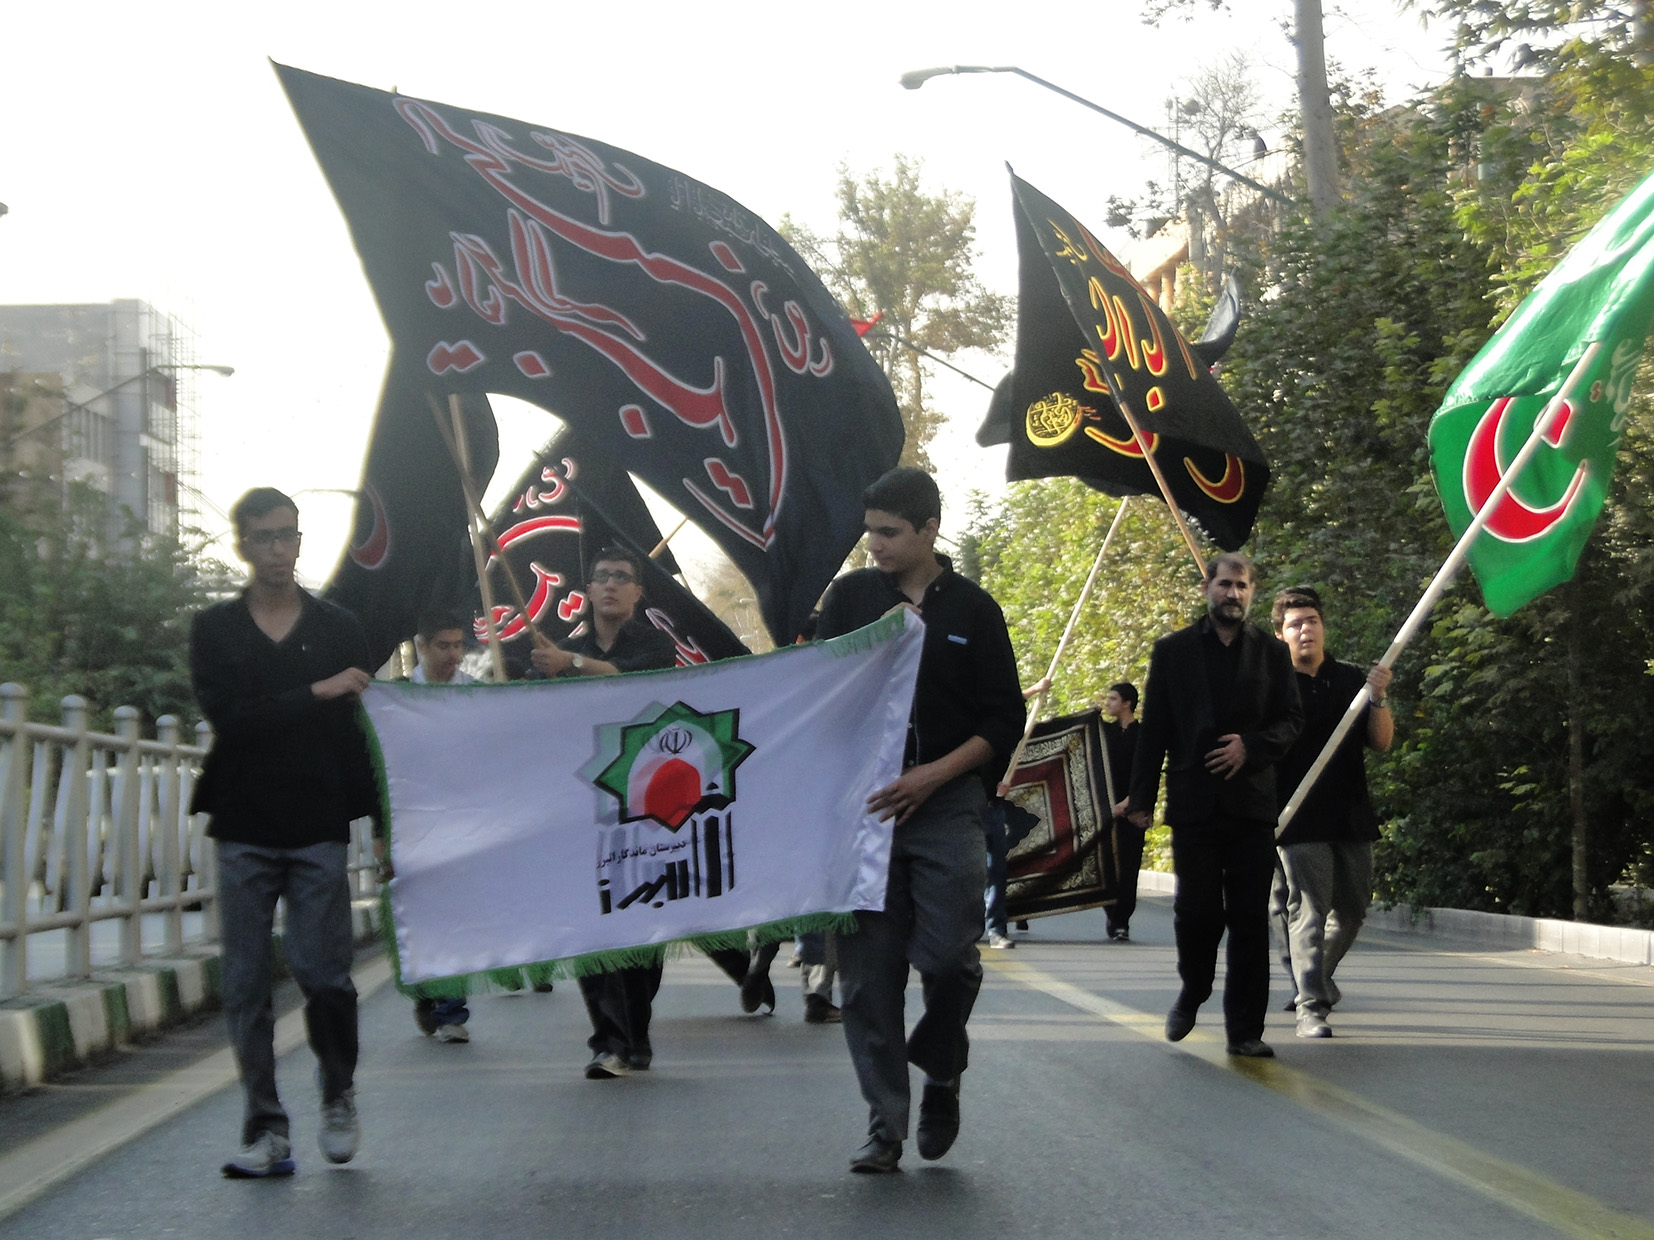 حرکت دانش آموزان عزادار حسینی در قالب دسته در سطح شهر